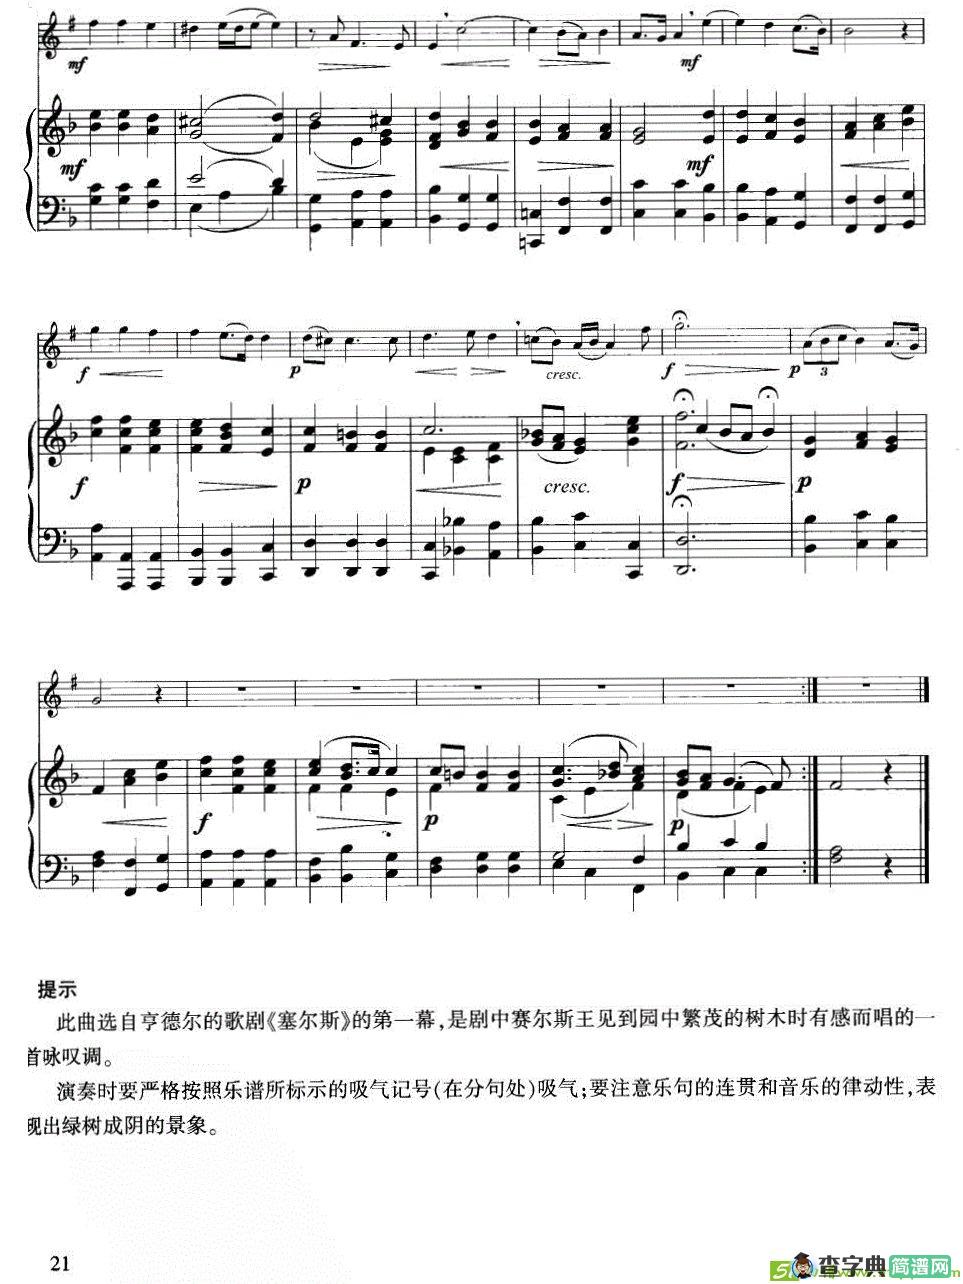 绿叶青葱铜管曲谱(小号+钢琴伴奏)